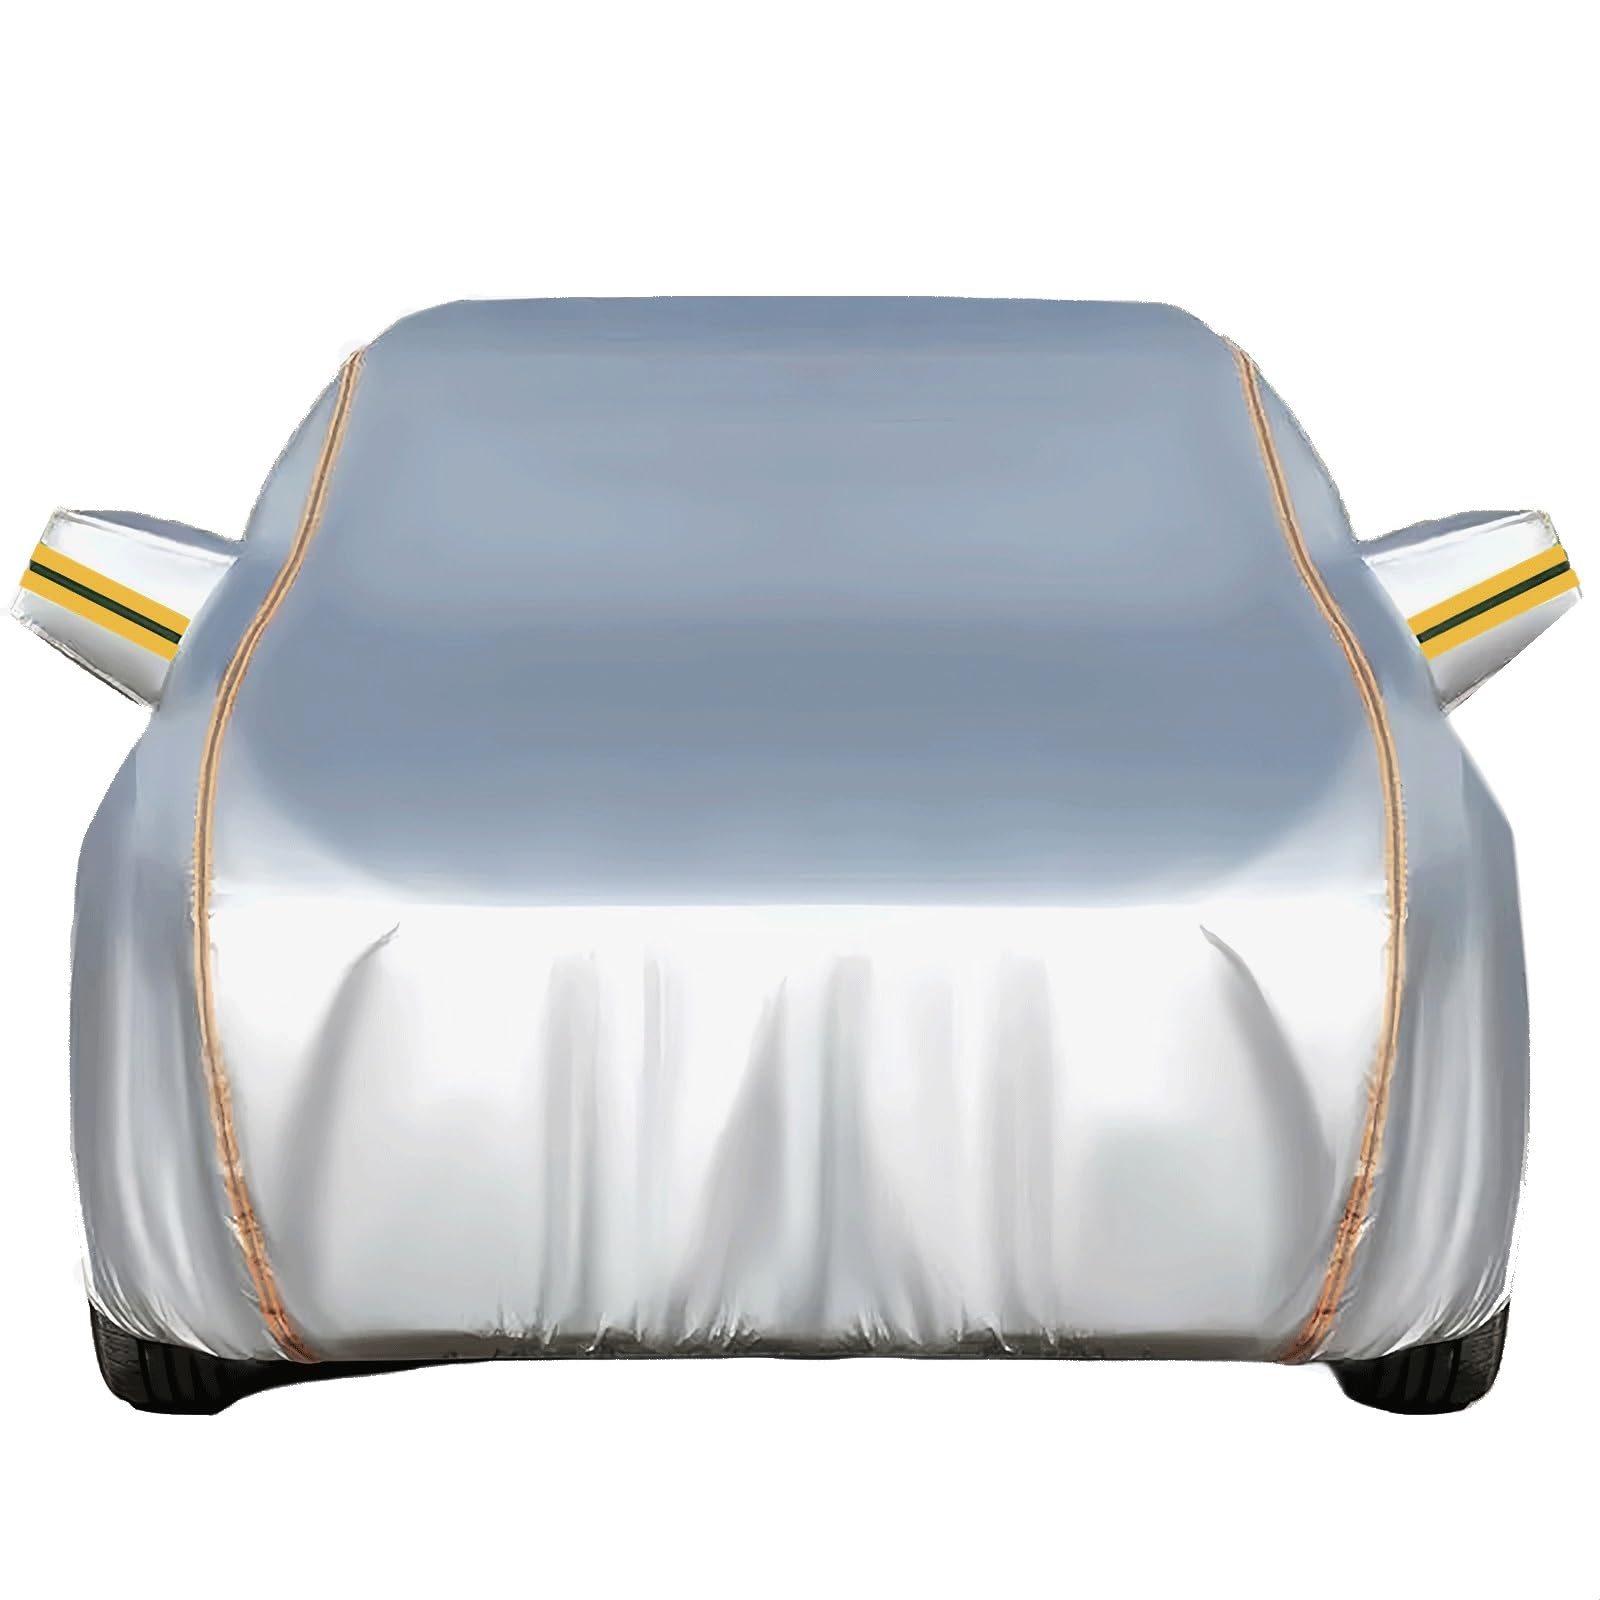 Autoabdeckung für Opel Astra G Cabrio 1998-2005,Autoplane Wasserdicht Atmungsaktiv Uv Beständig Reißfest Und Langlebig,innen und außen schneesicher regenfest Oxford-Stoff-Autoplane (Color : Silver) von KarFRi